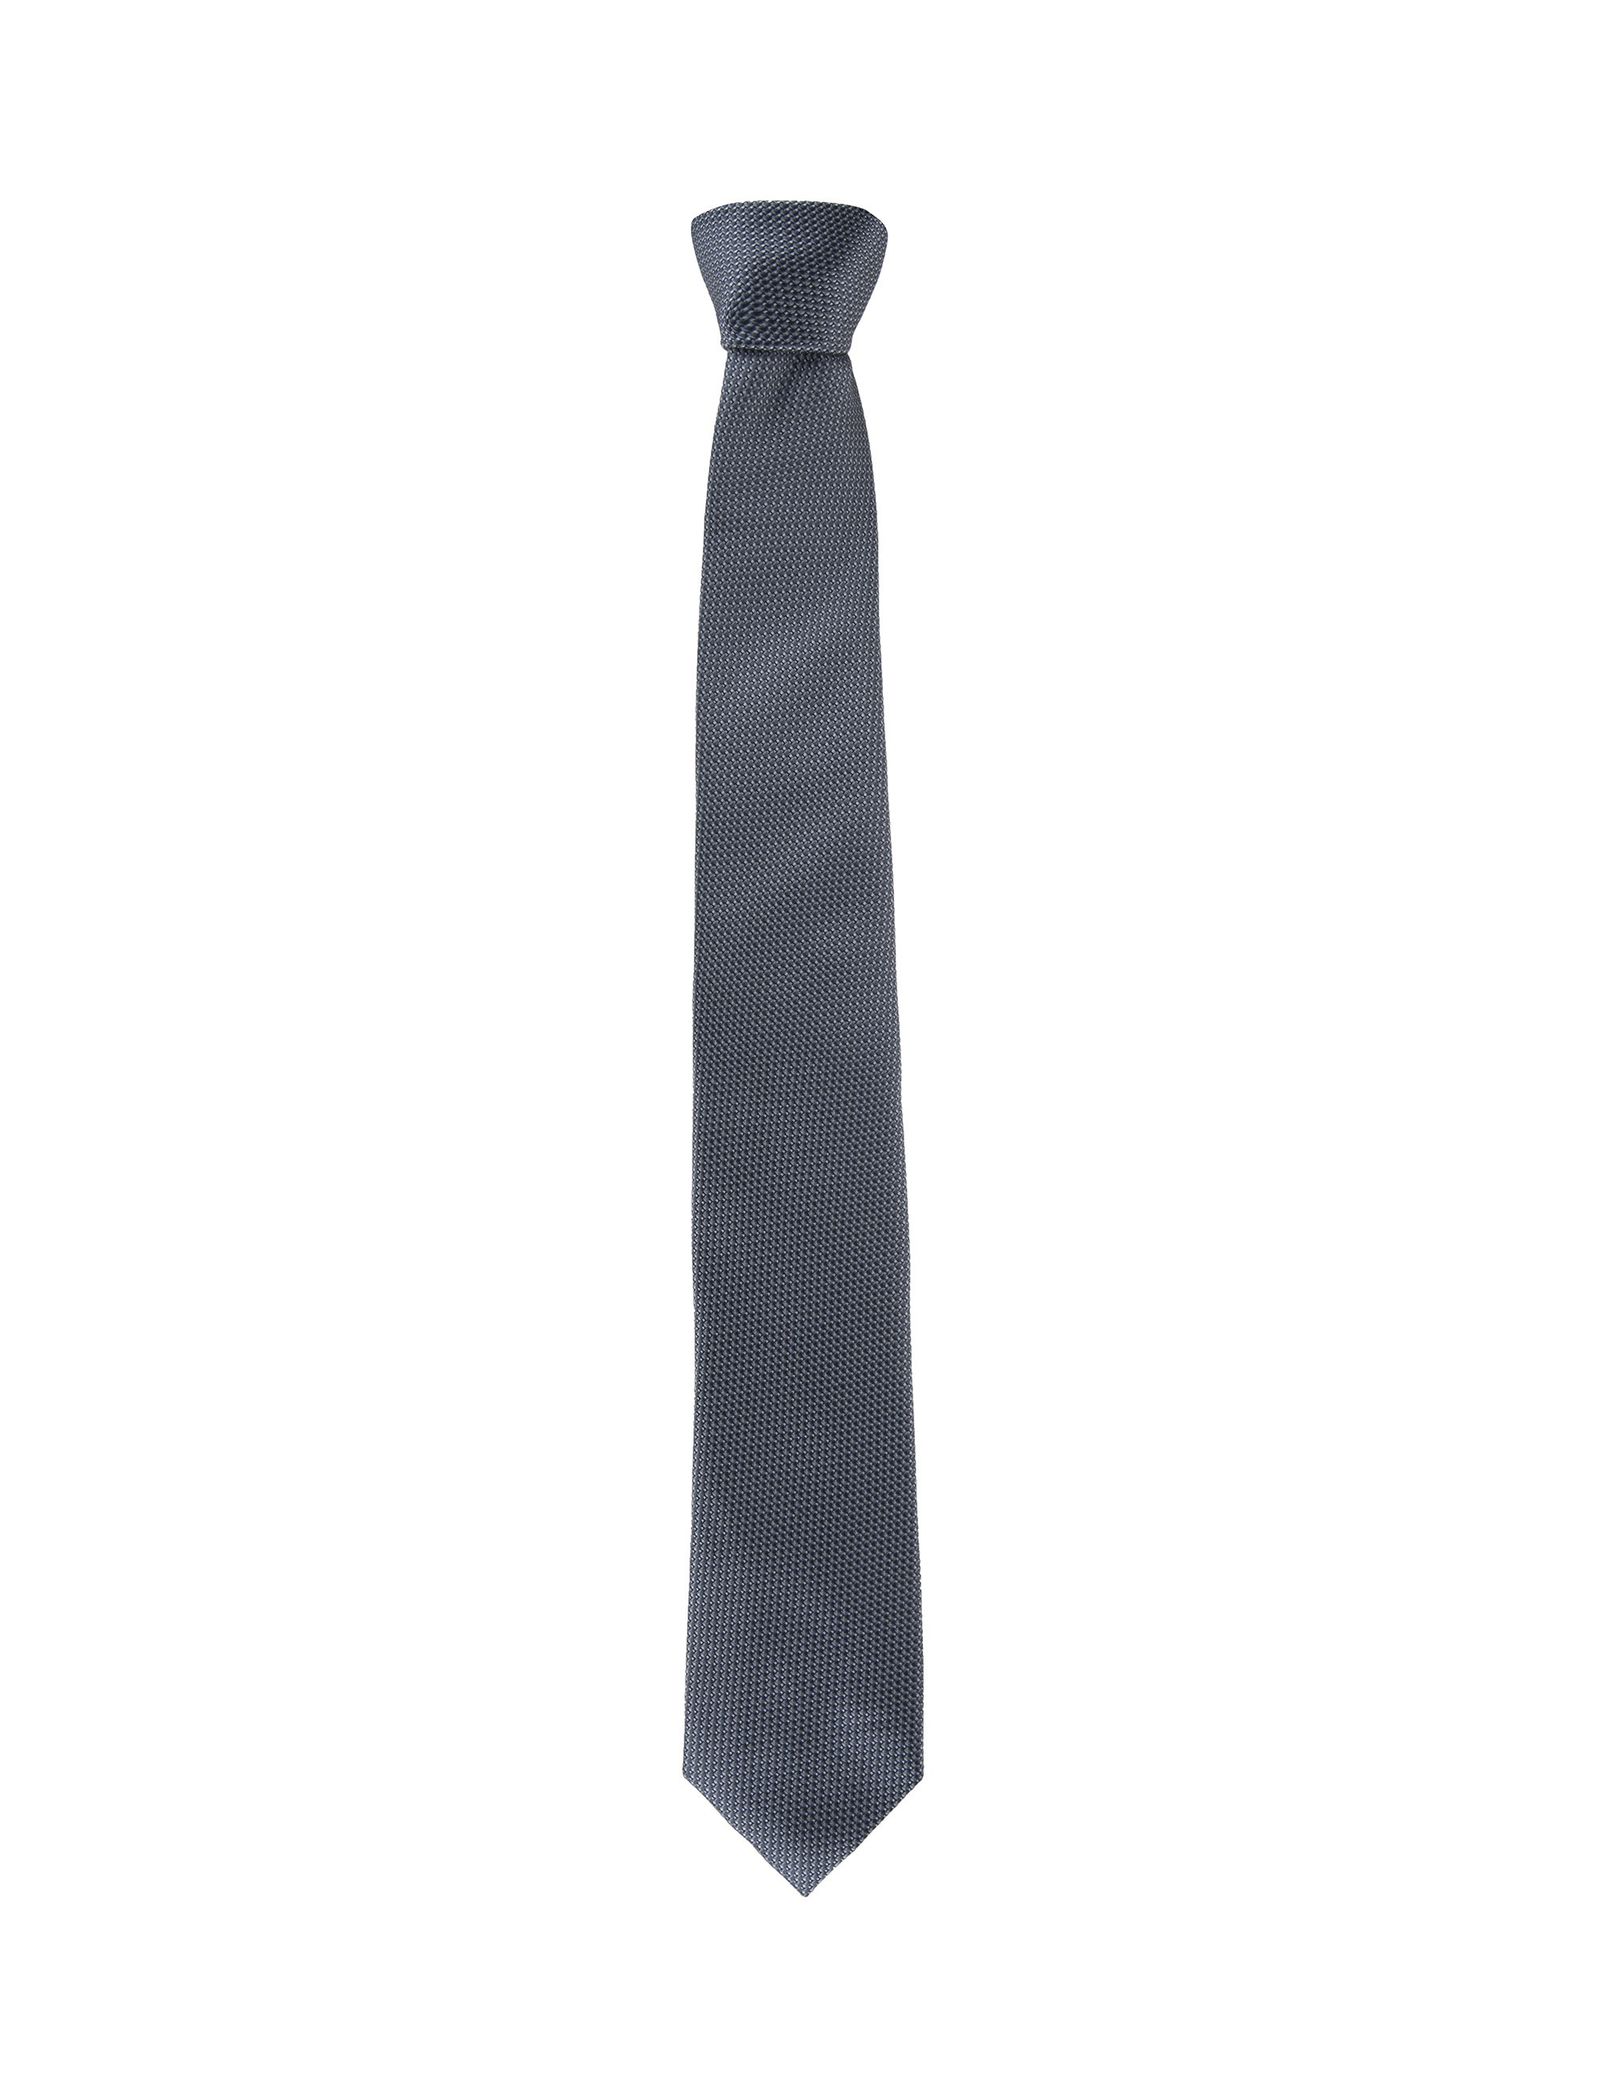 کراوات طرح دار مردانه - یوپیم - طوسي - 2